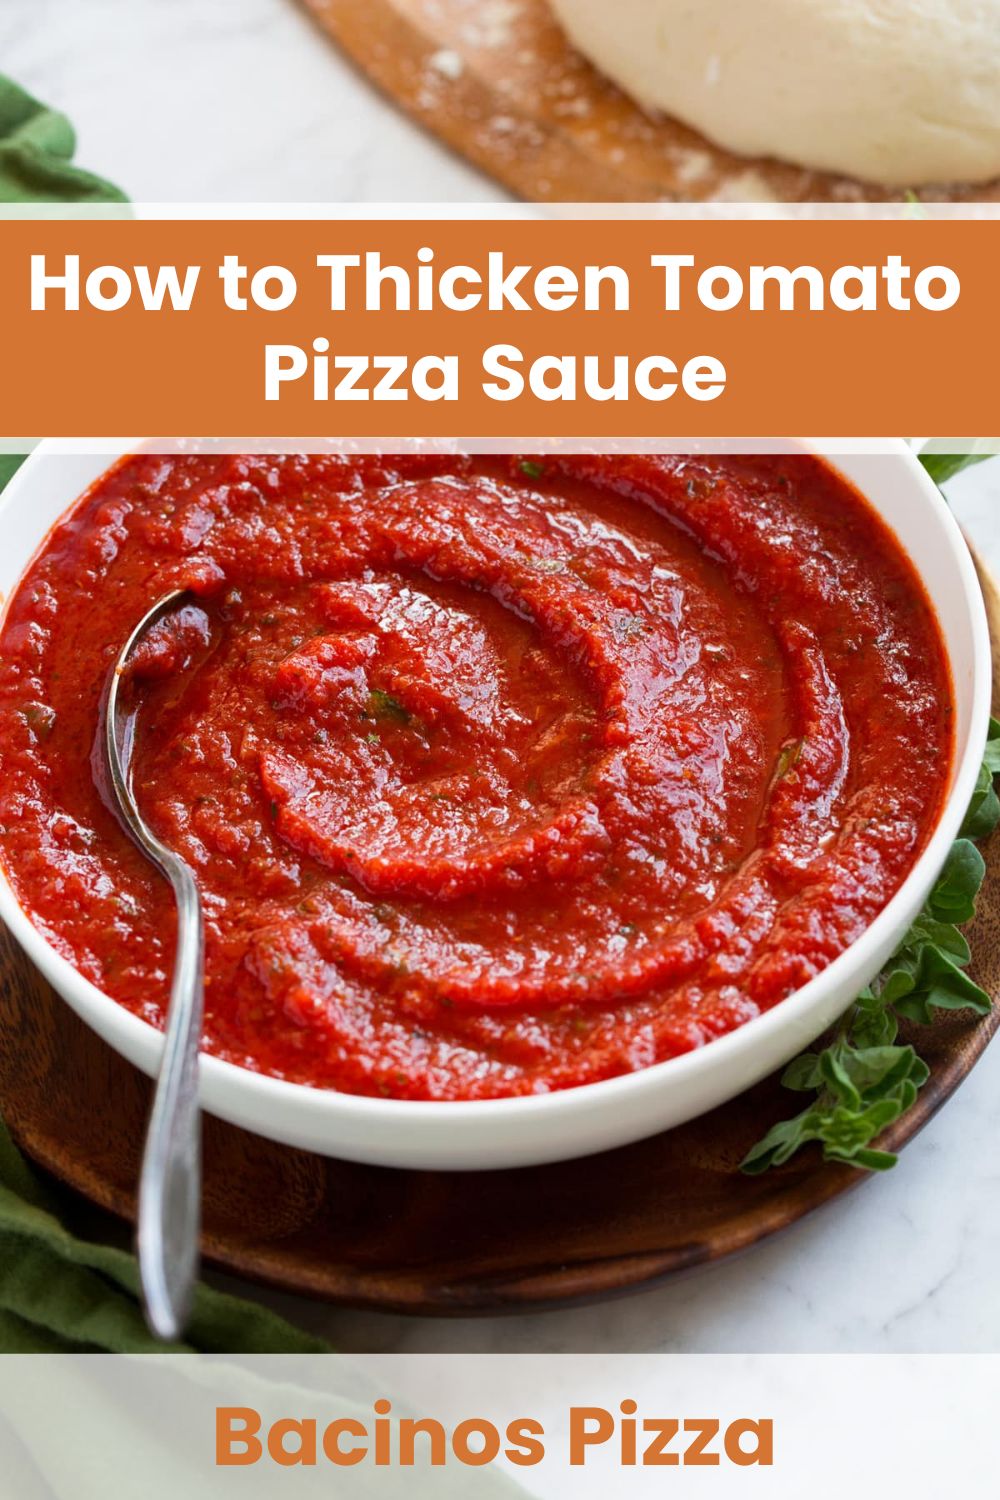 Thicken Tomato Pizza Sauce